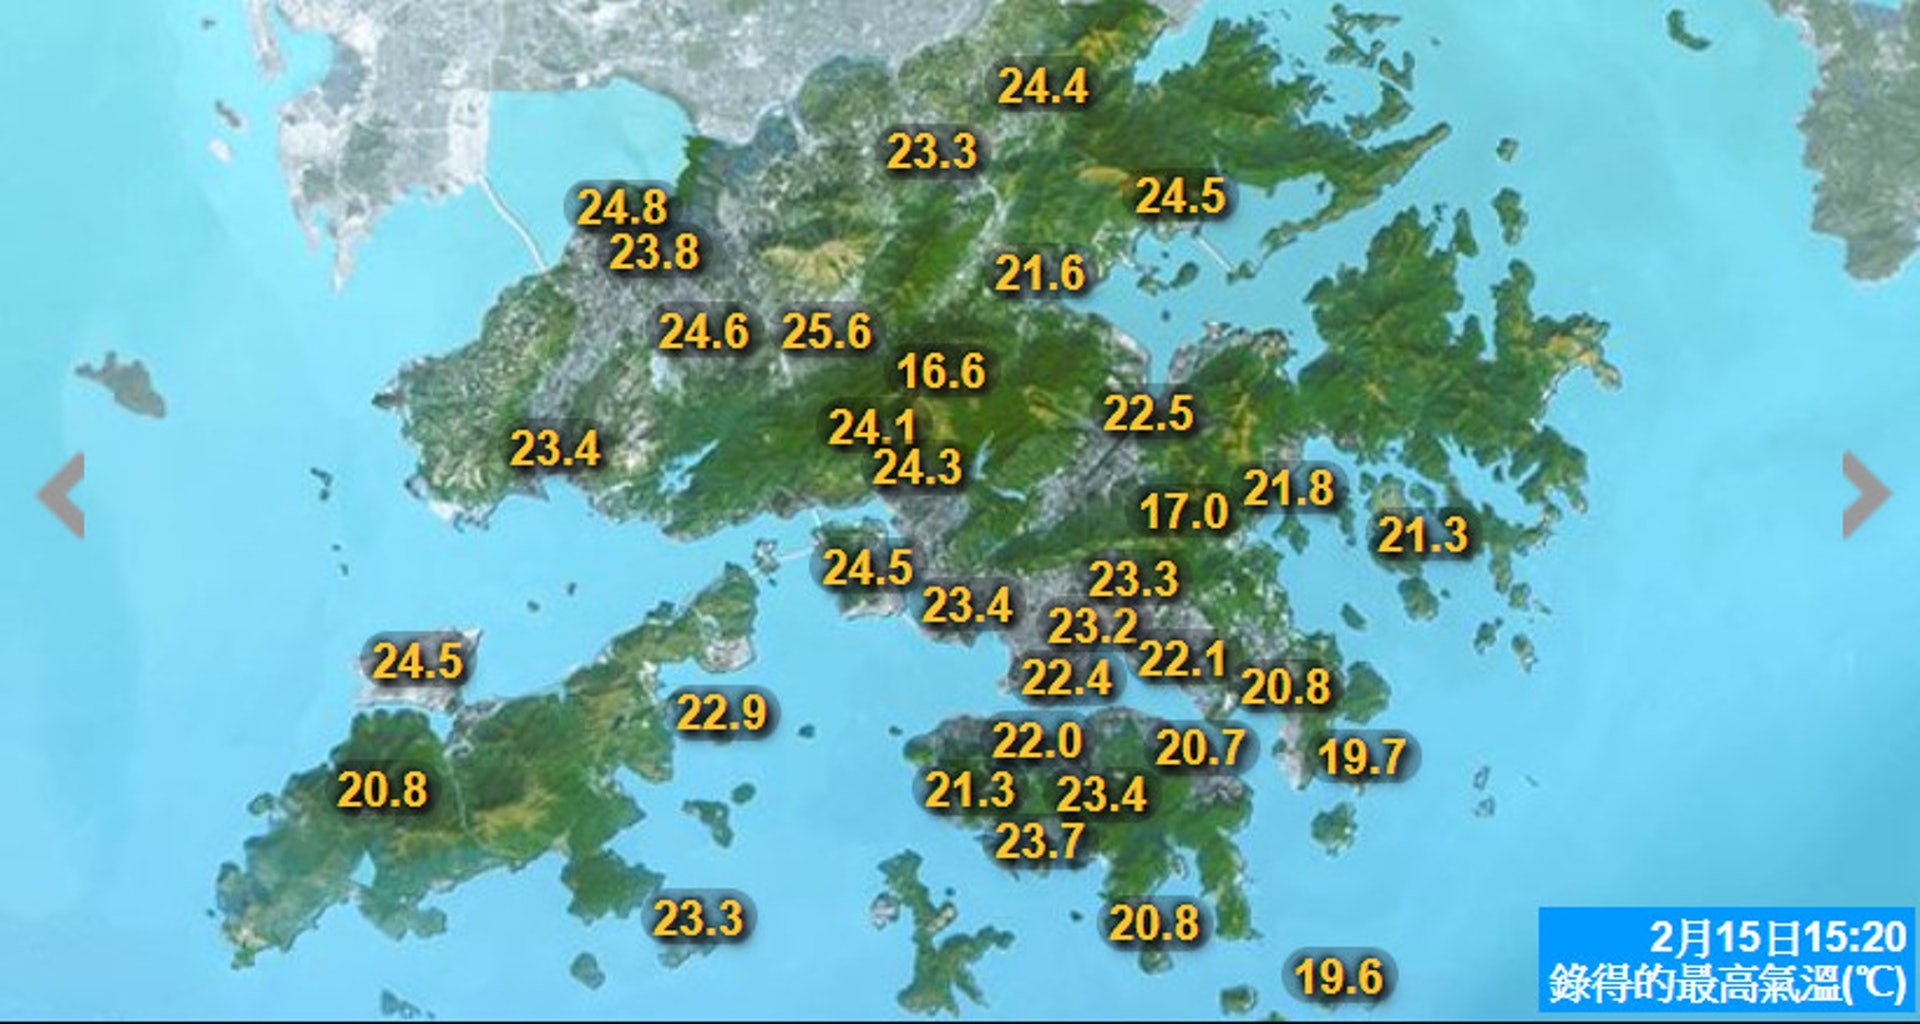 天氣 暖冬勢破紀錄氣溫數據全面睇三月寒冷日出現機率大檢閱 香港01 天氣